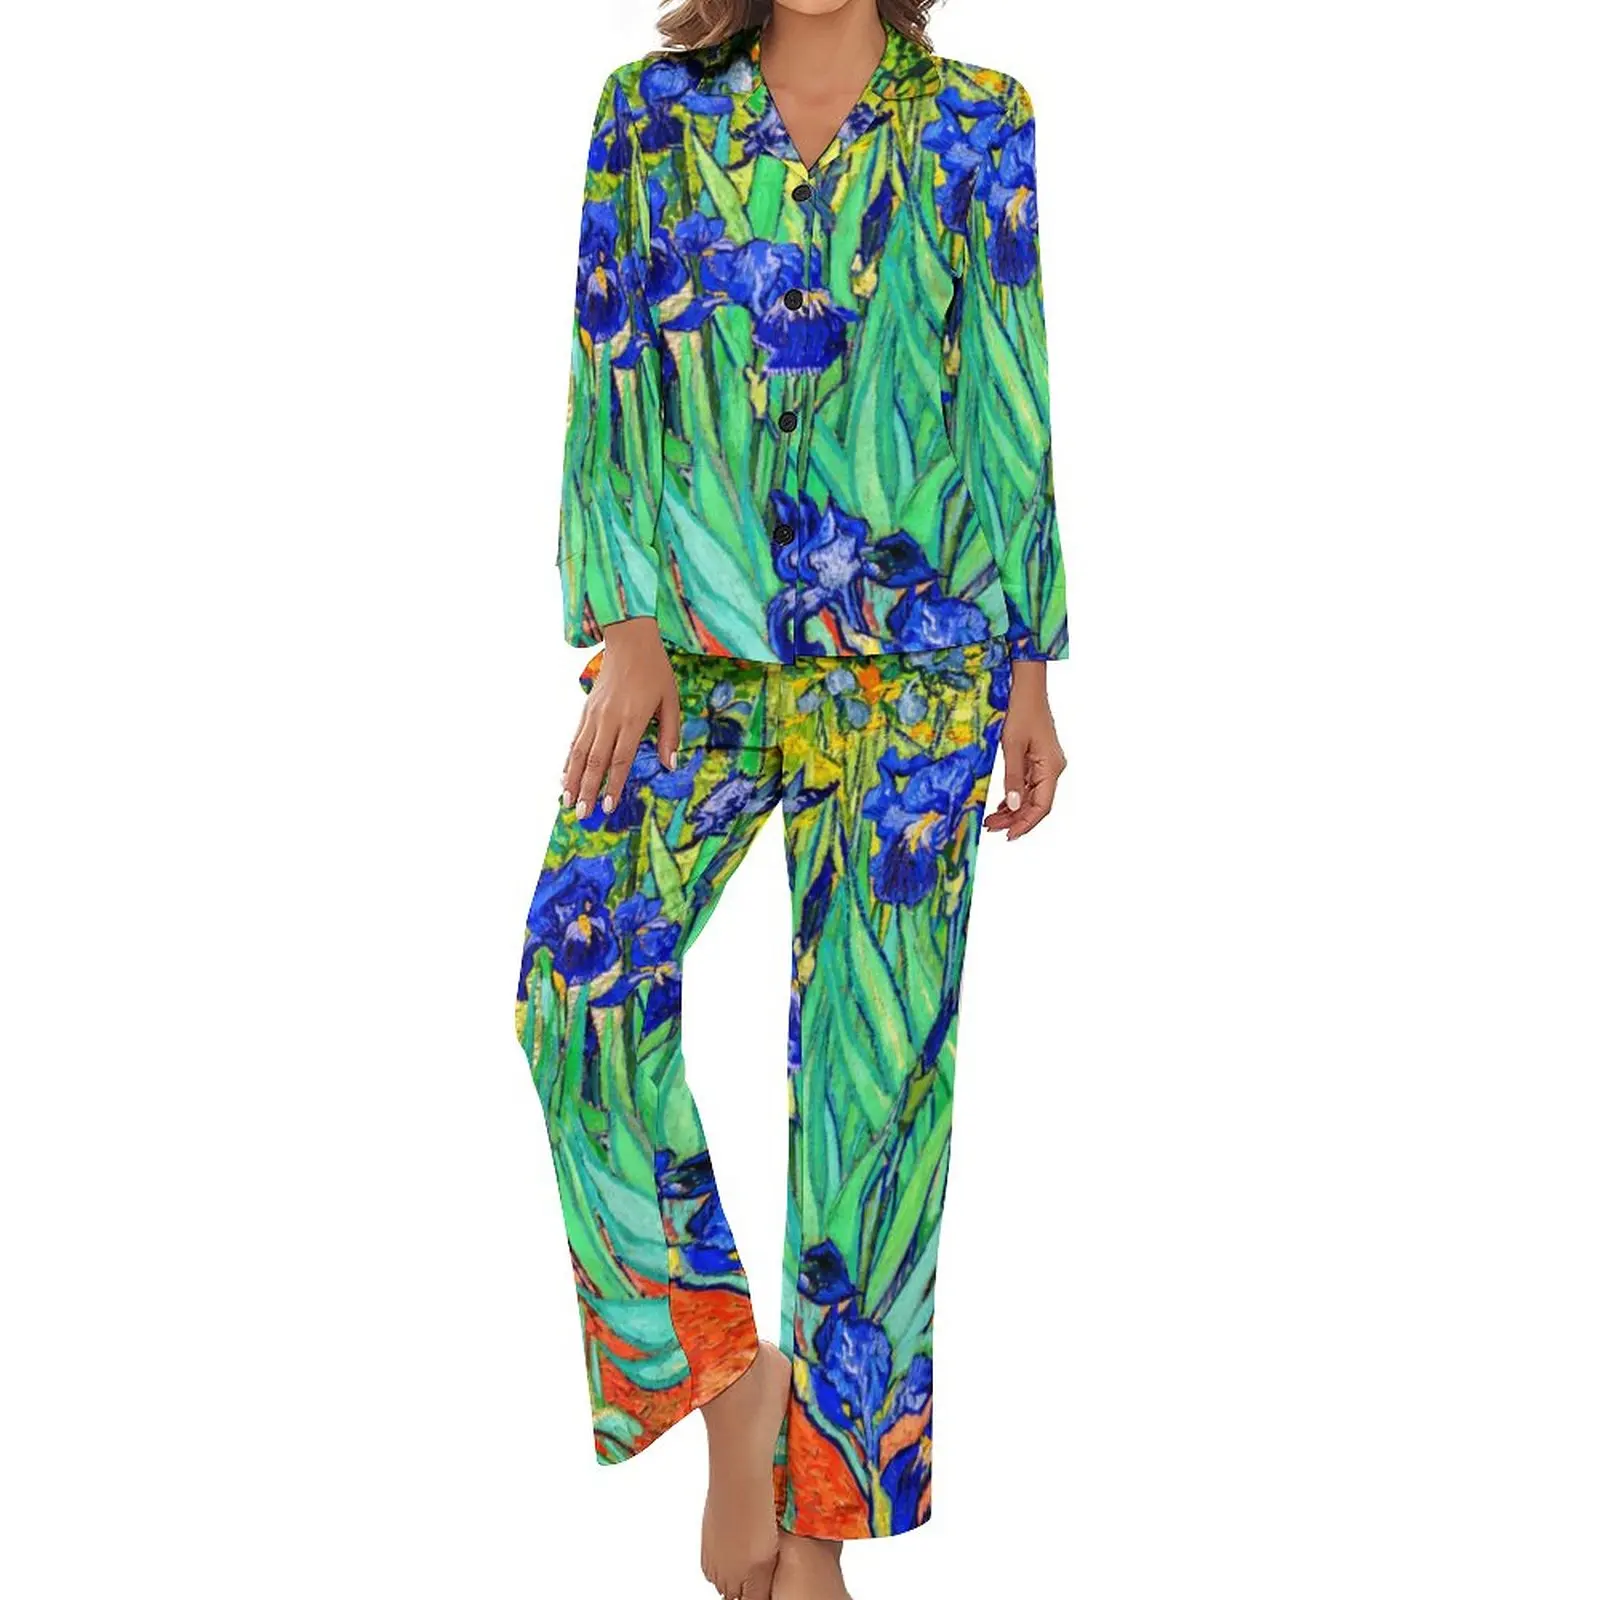 

Пижама Винсента Ван Гога женская, Милая Ночная рубашка с рисунком цветов, ирисы, повседневный костюм из двух предметов с длинным рукавом и V-образным вырезом, осень